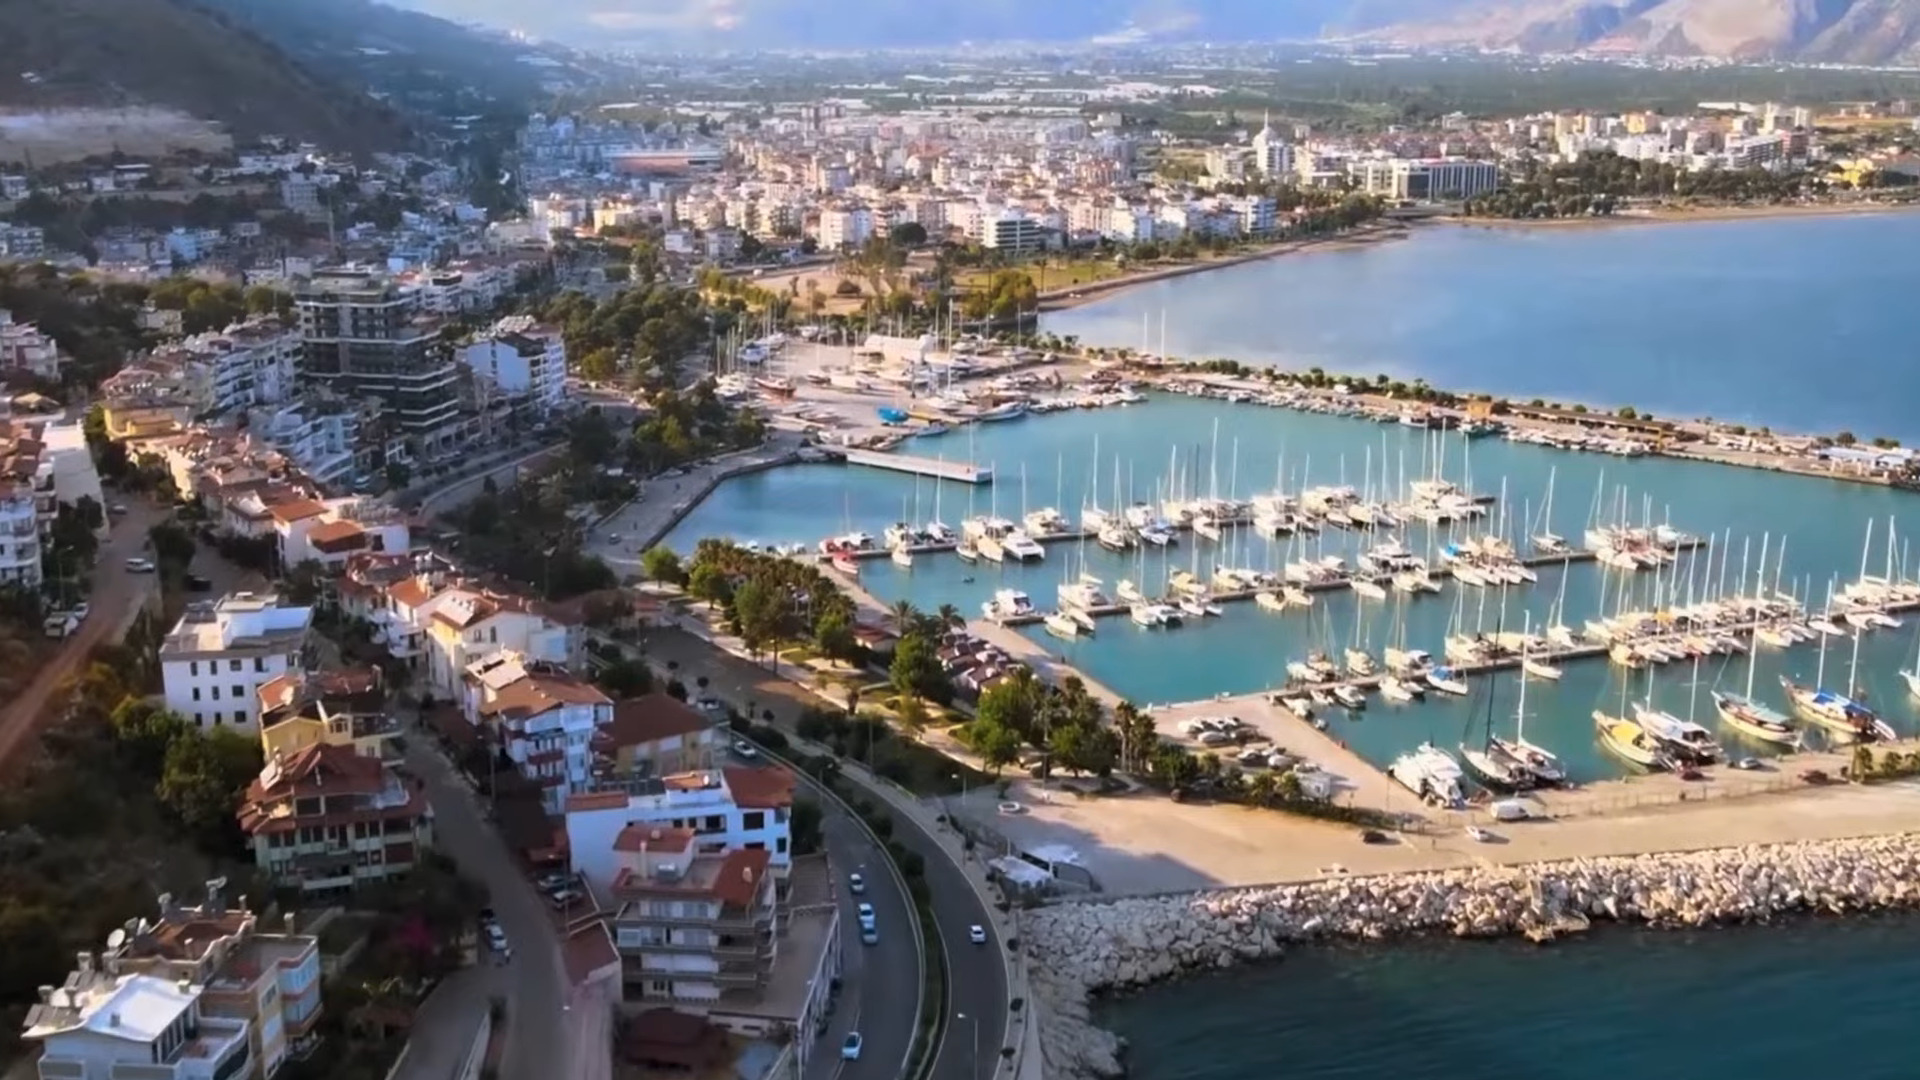 Antalya egy híres történelmi mediterrán tengerparti üdülőváros, Törökország déli partján